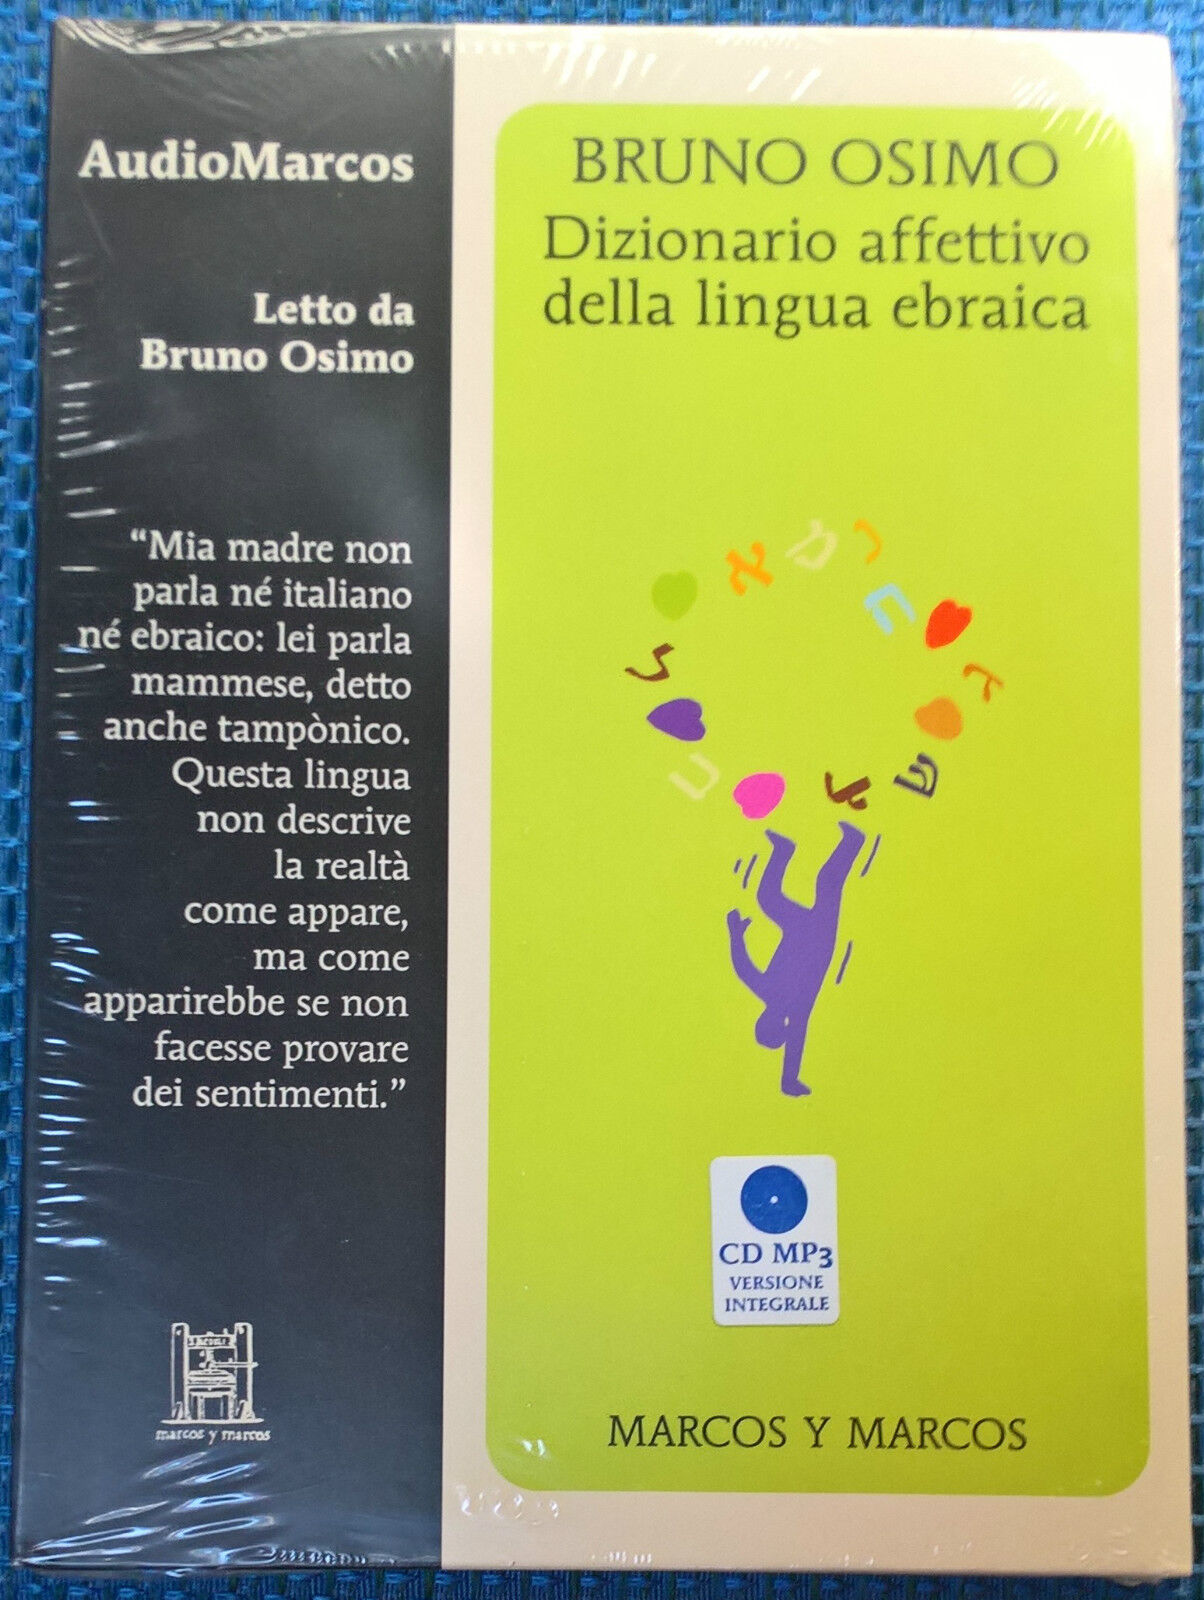 Dizionario affettivo della lingua ebraica  - Osimo - 2013, Audiolibro Marcos